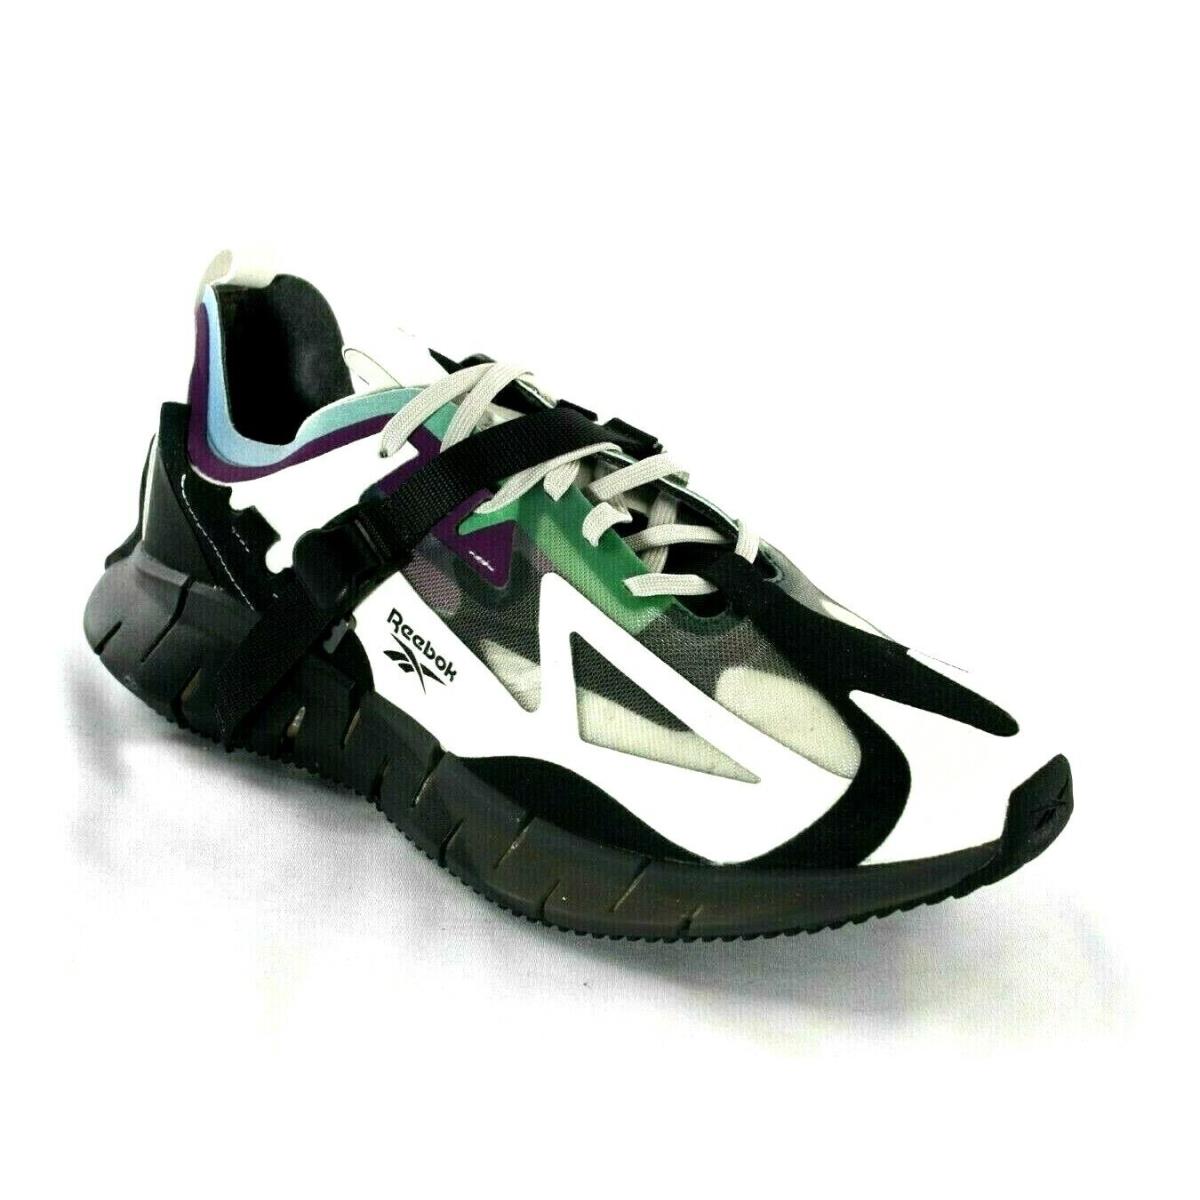 Men`s Reebok Zig Kinetica Concept Type Running EG8915 Sansto/black/emerald Shoe